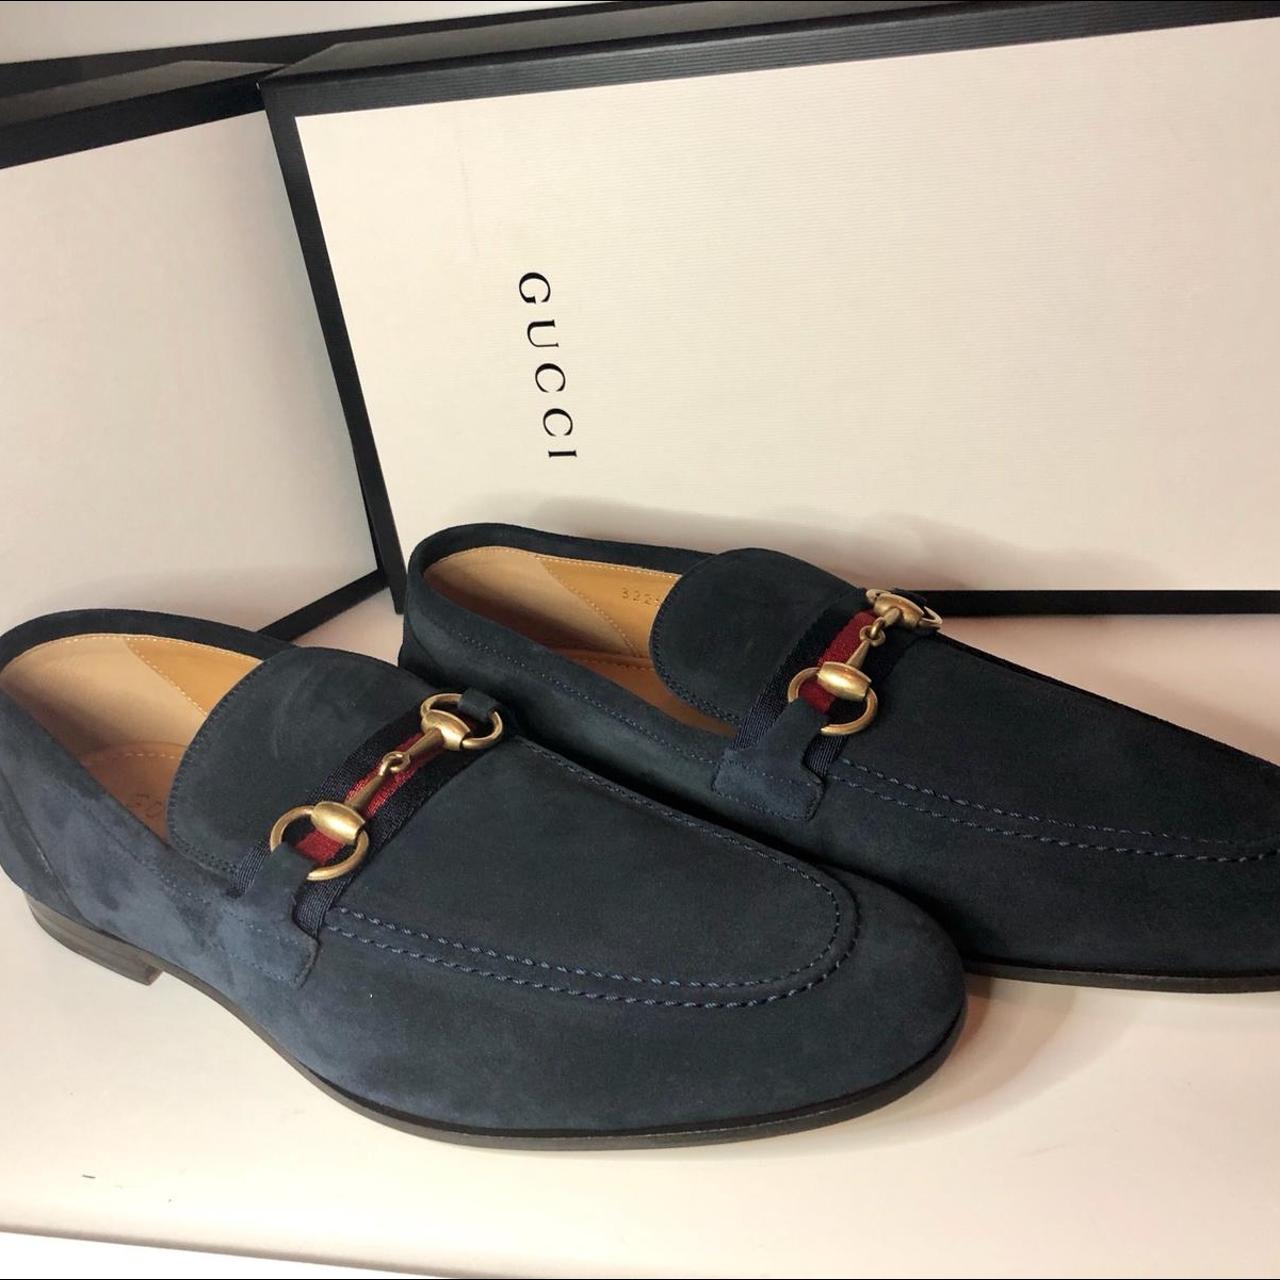 skyld Kalksten Formindske Navy blue suede Gucci loafers with Gucci branded... - Depop